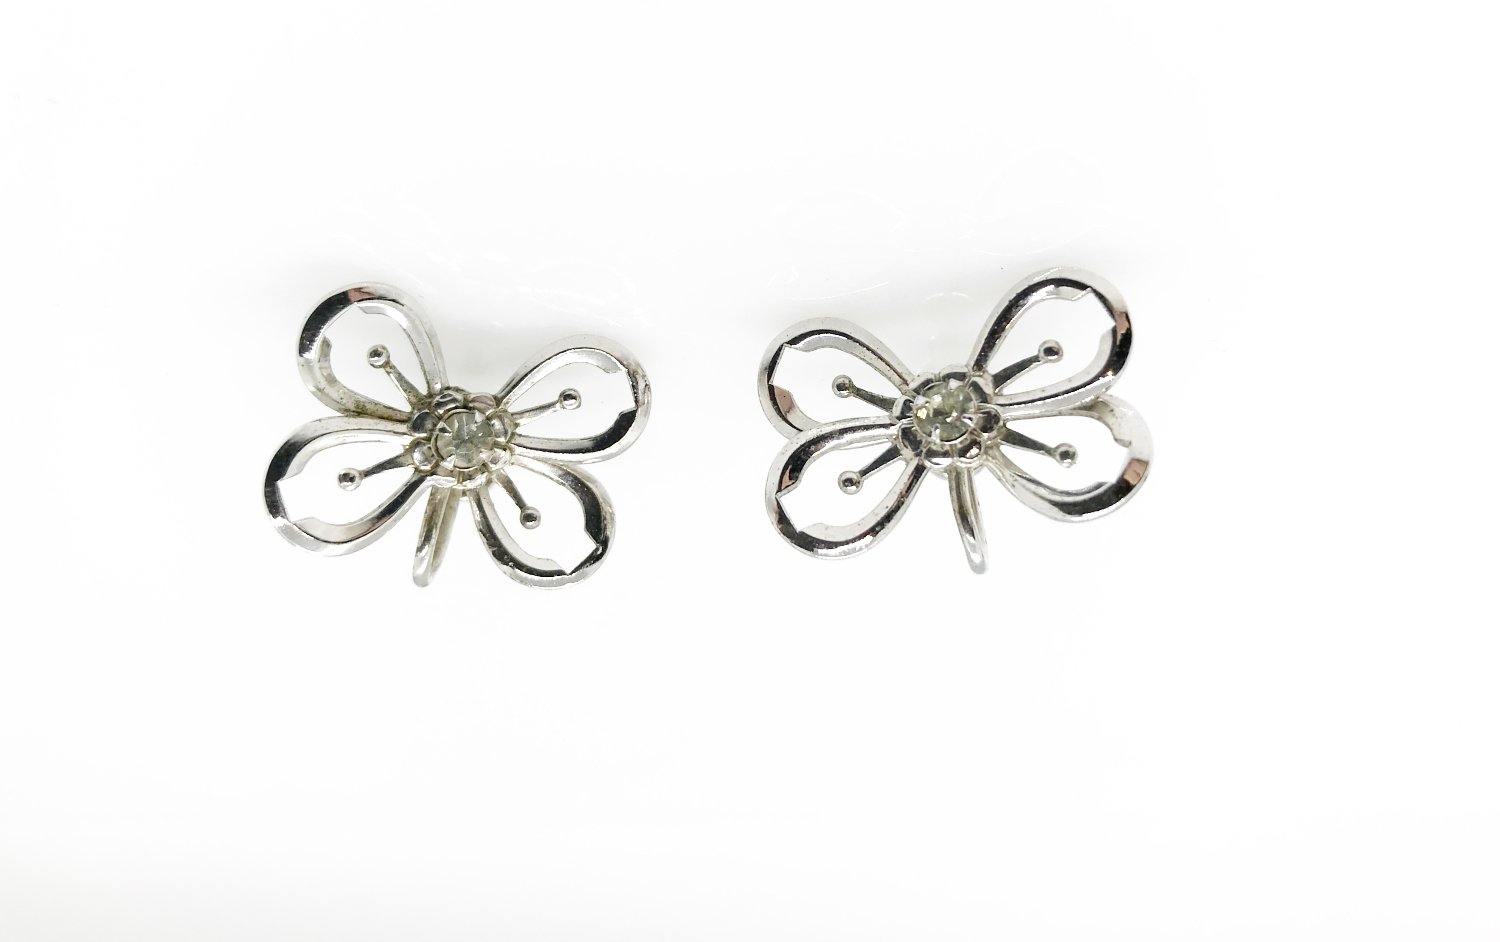 Vintage Sterling Butterfly Earrings with Rhinestones - Lamoree’s Vintage